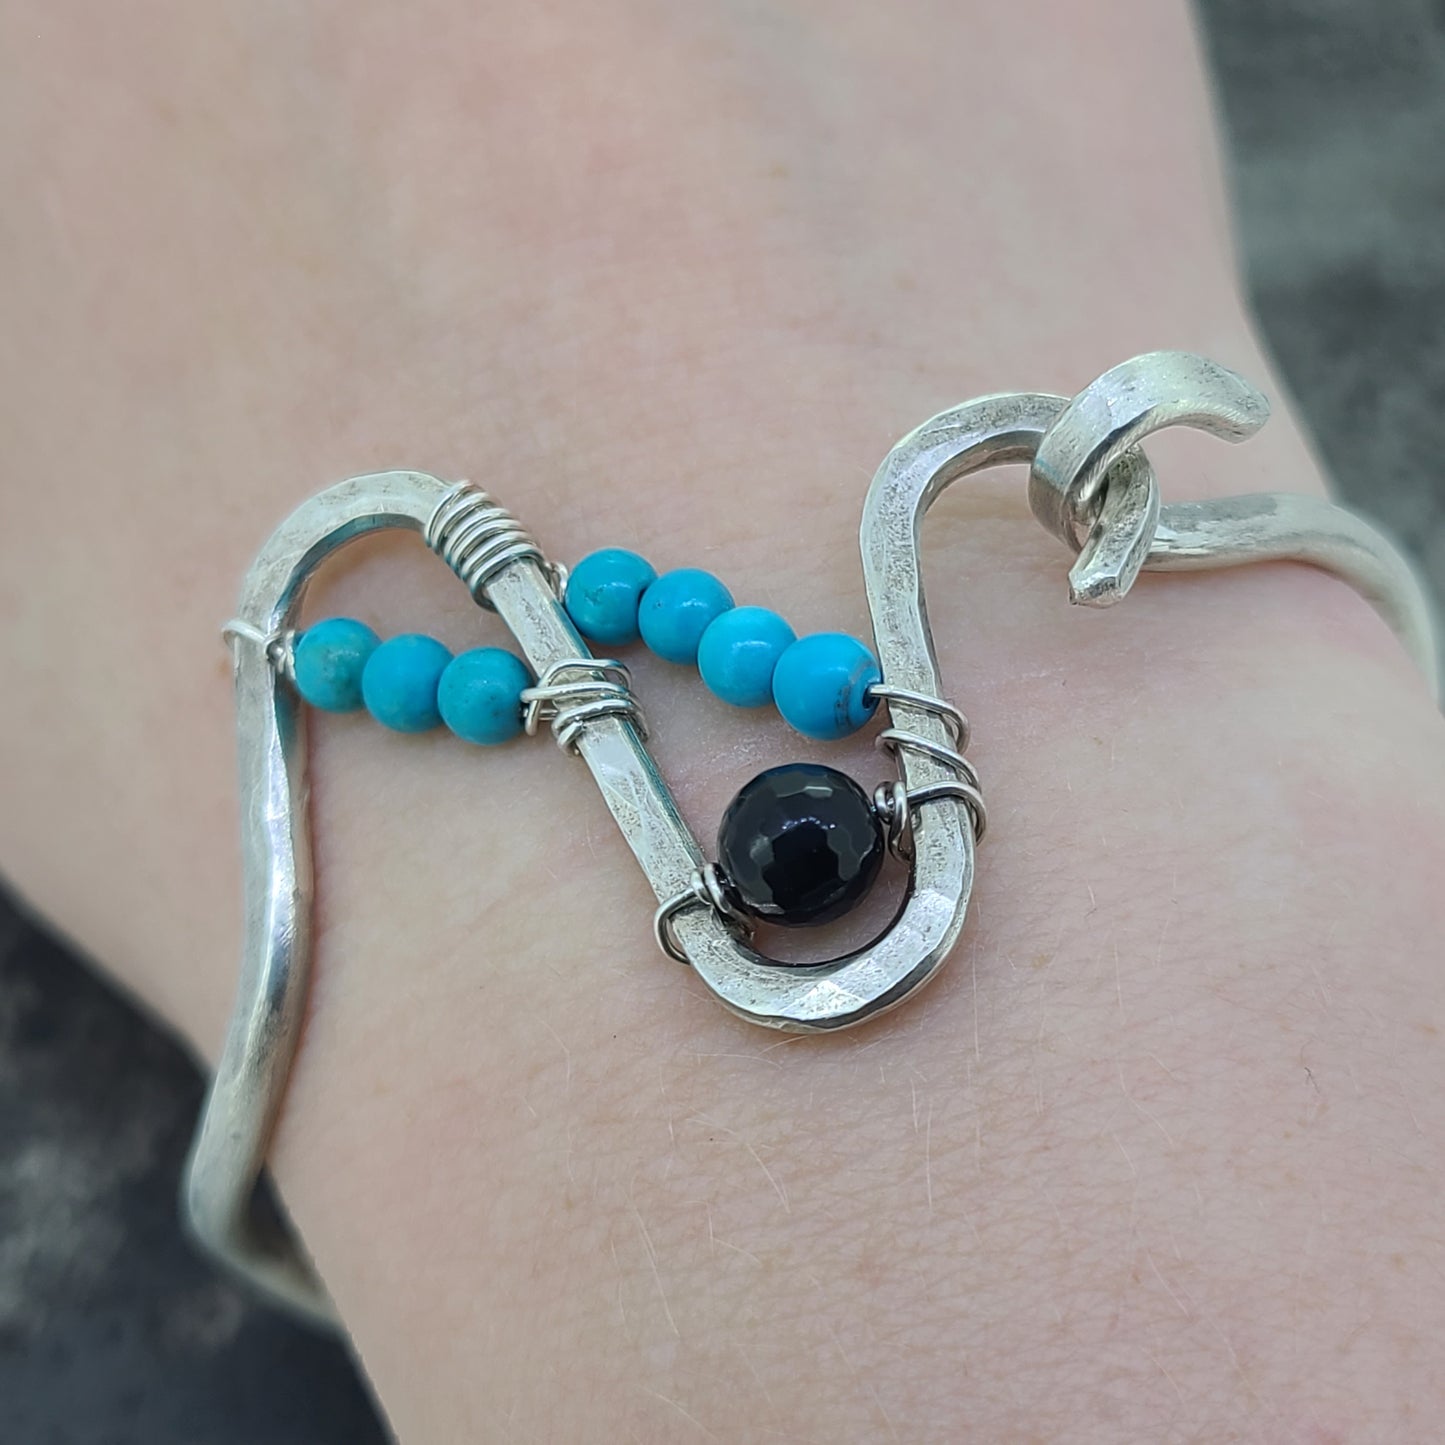 Handmade Turquoise and Black Onyx Bracelet